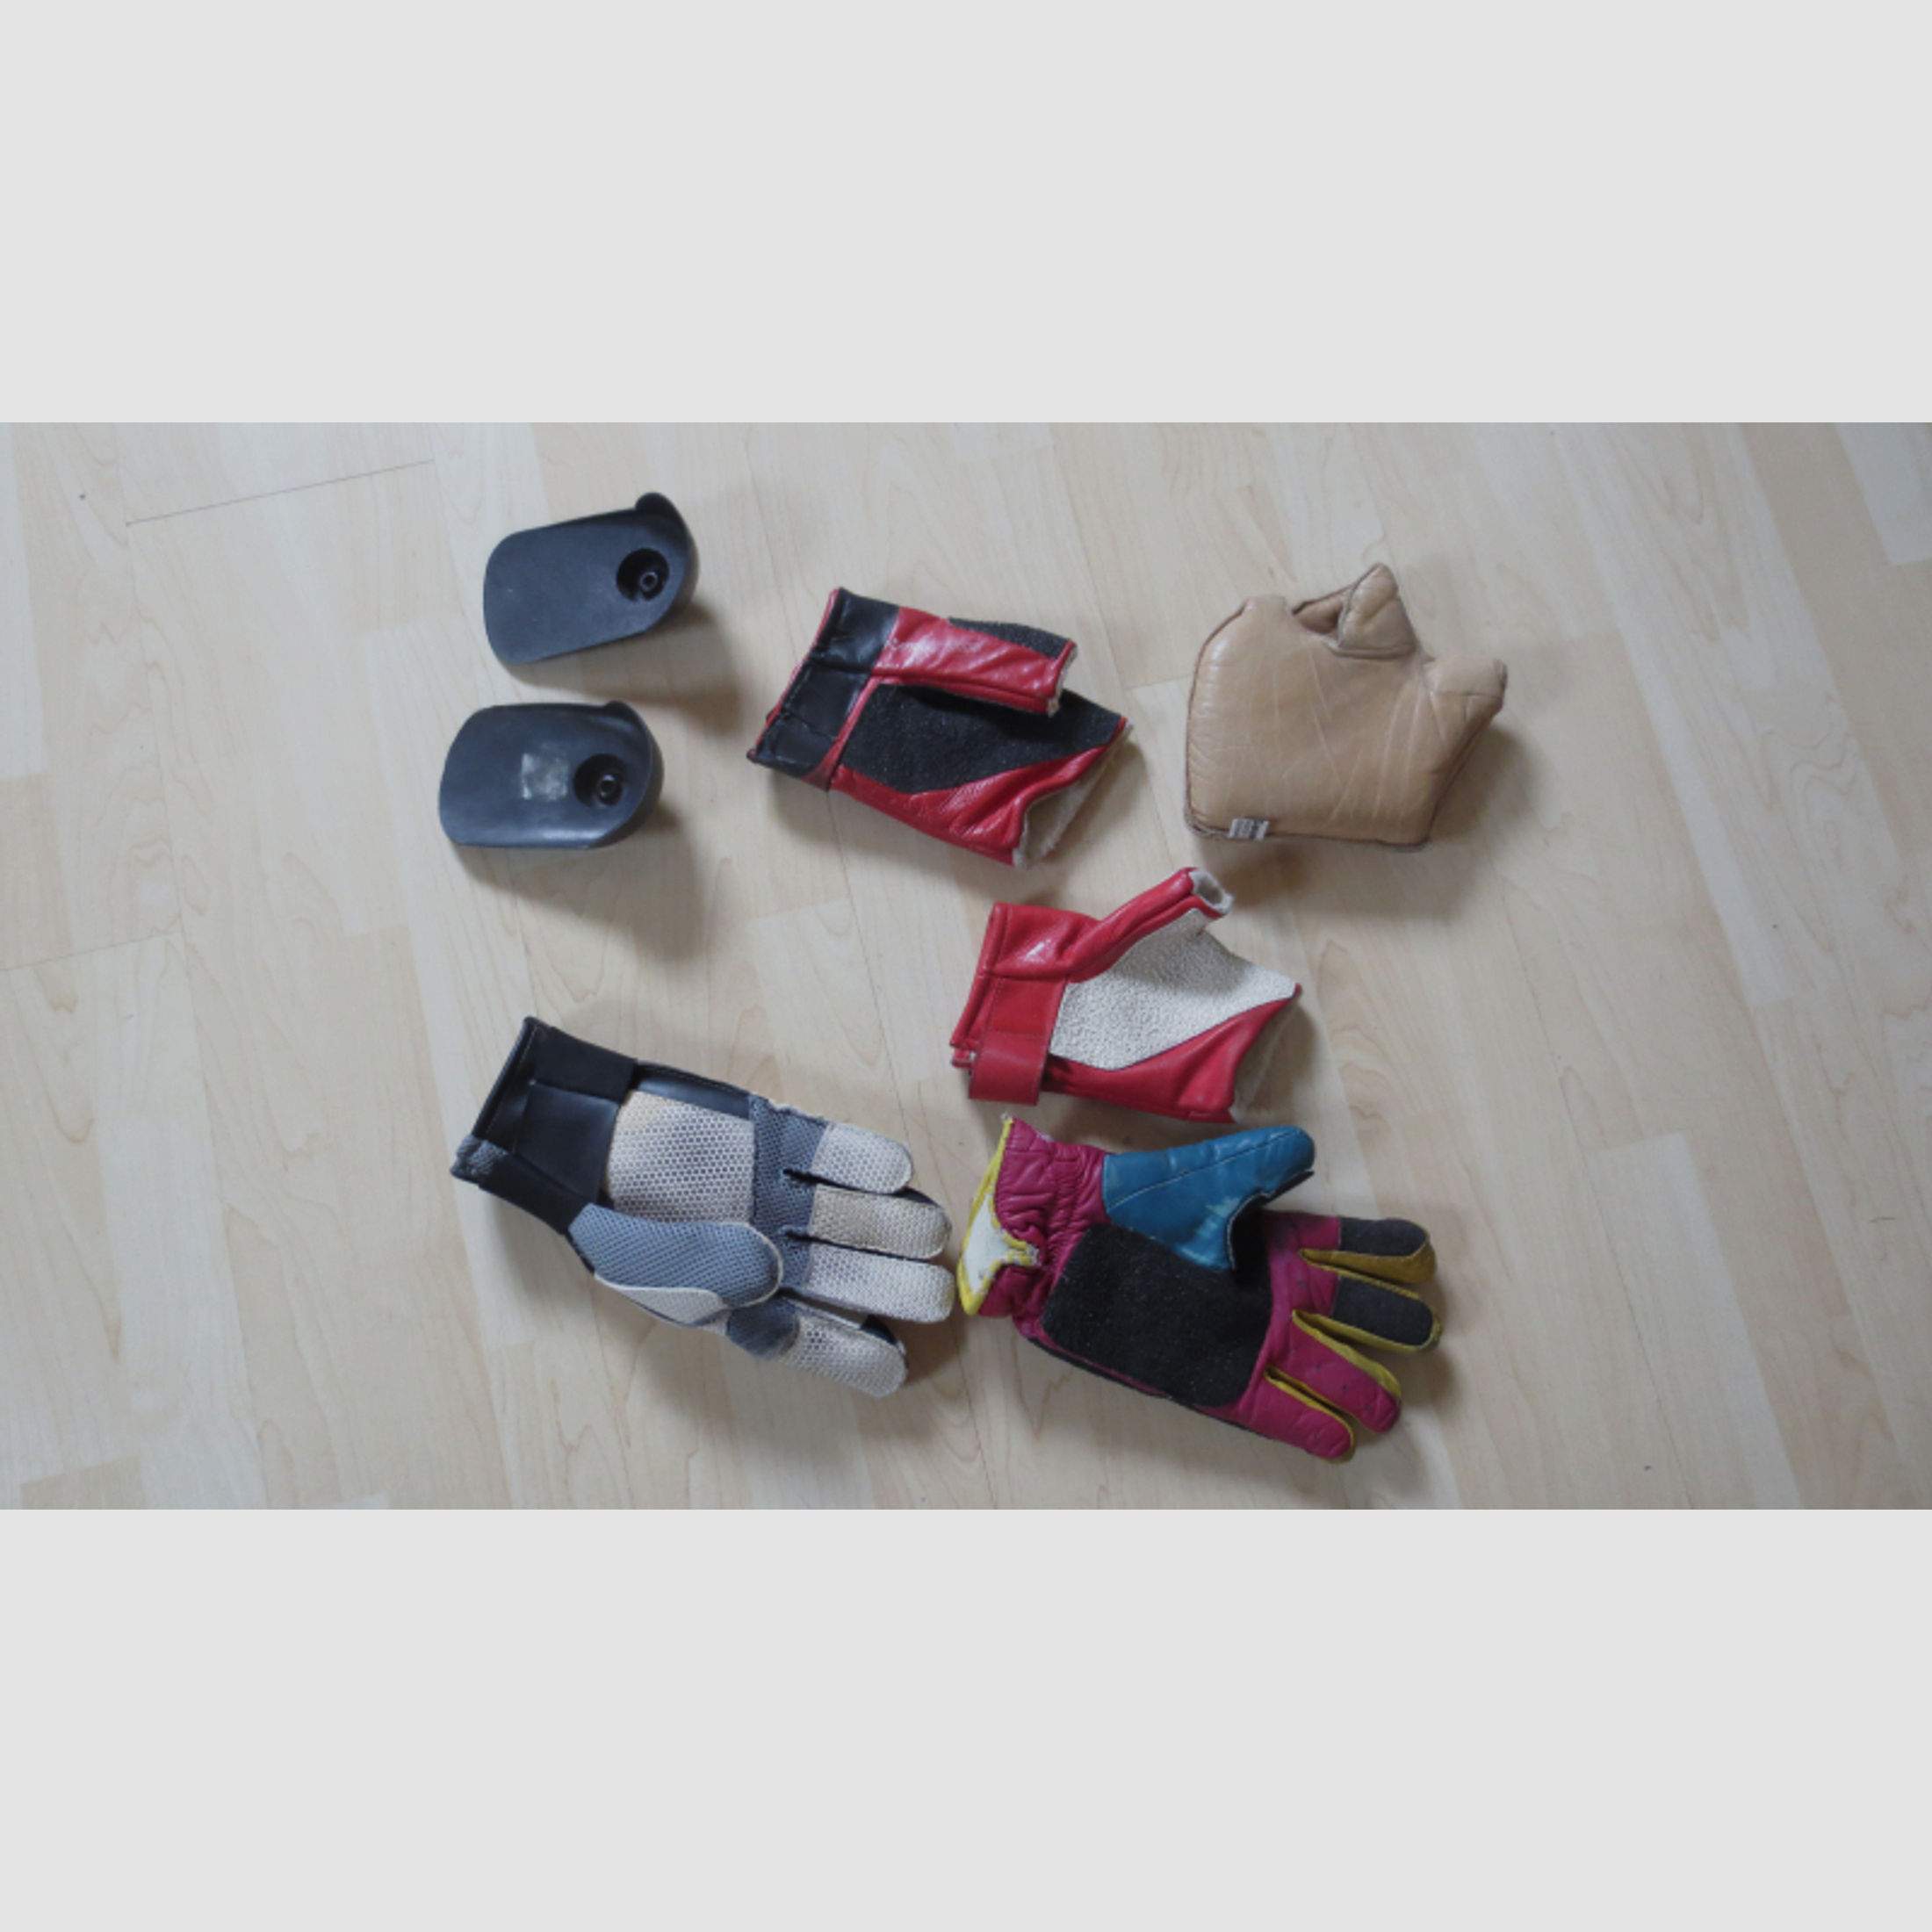 Konvolut Sammelsurium von Ausrüstungsgegenständen für das Sportschiessen Handschuhe Blenden